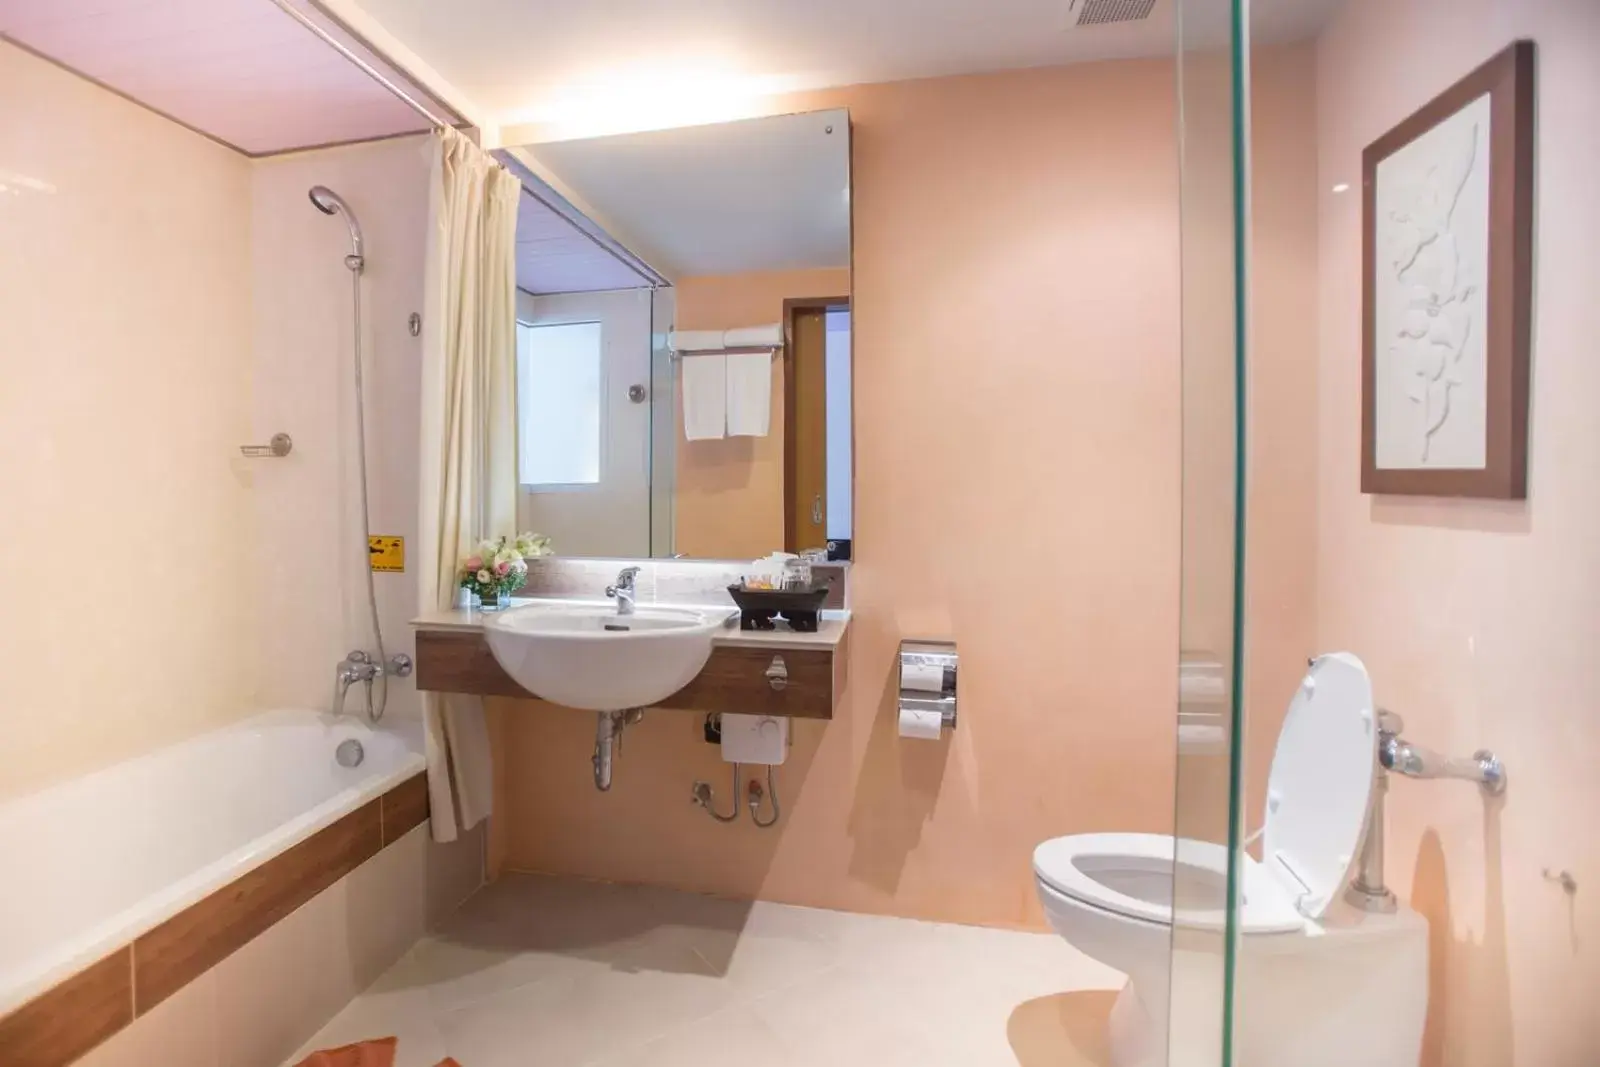 Bathroom in Asia Cha-am Hotel